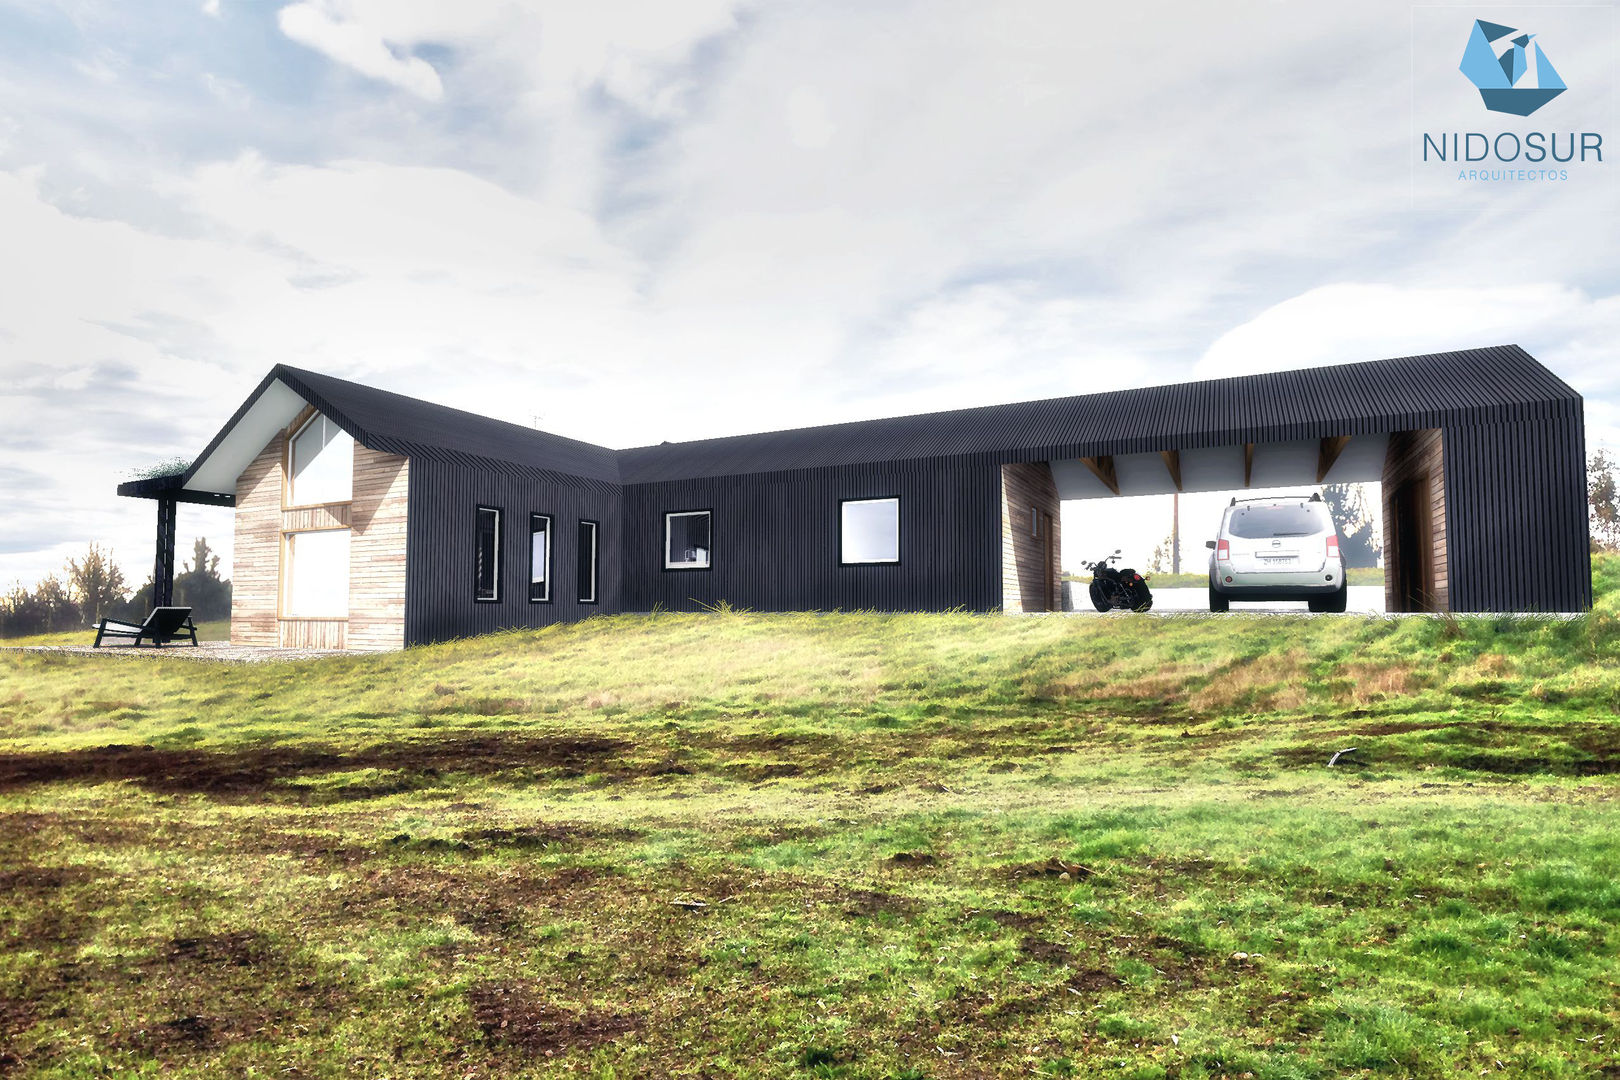 Diseño de Casa 3N en Valdivia por NidoSur Arquitectos, NidoSur Arquitectos - Valdivia NidoSur Arquitectos - Valdivia Detached home